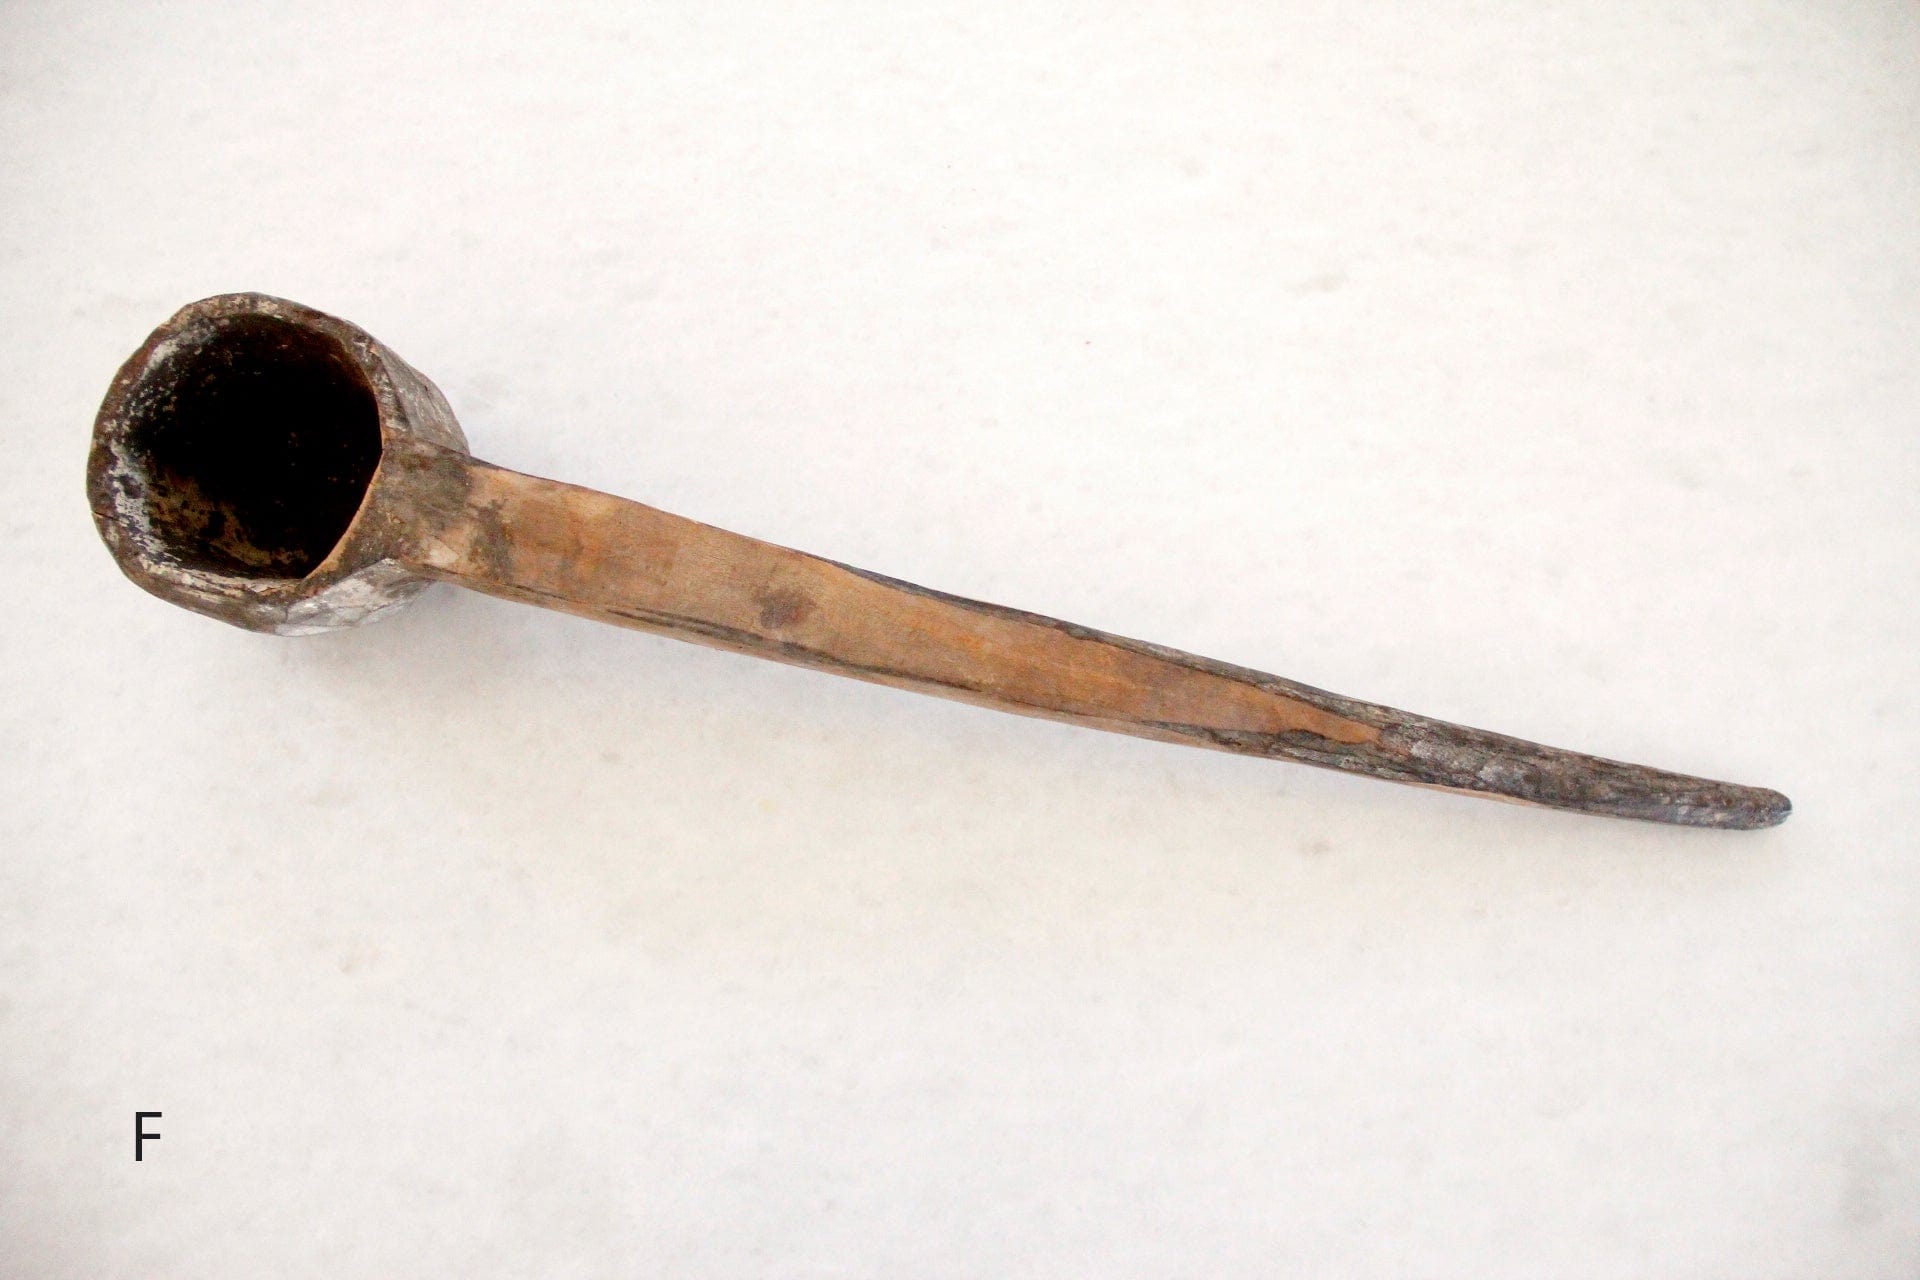 Antique Wooden Spoon | X Large | Wood Ladle decor